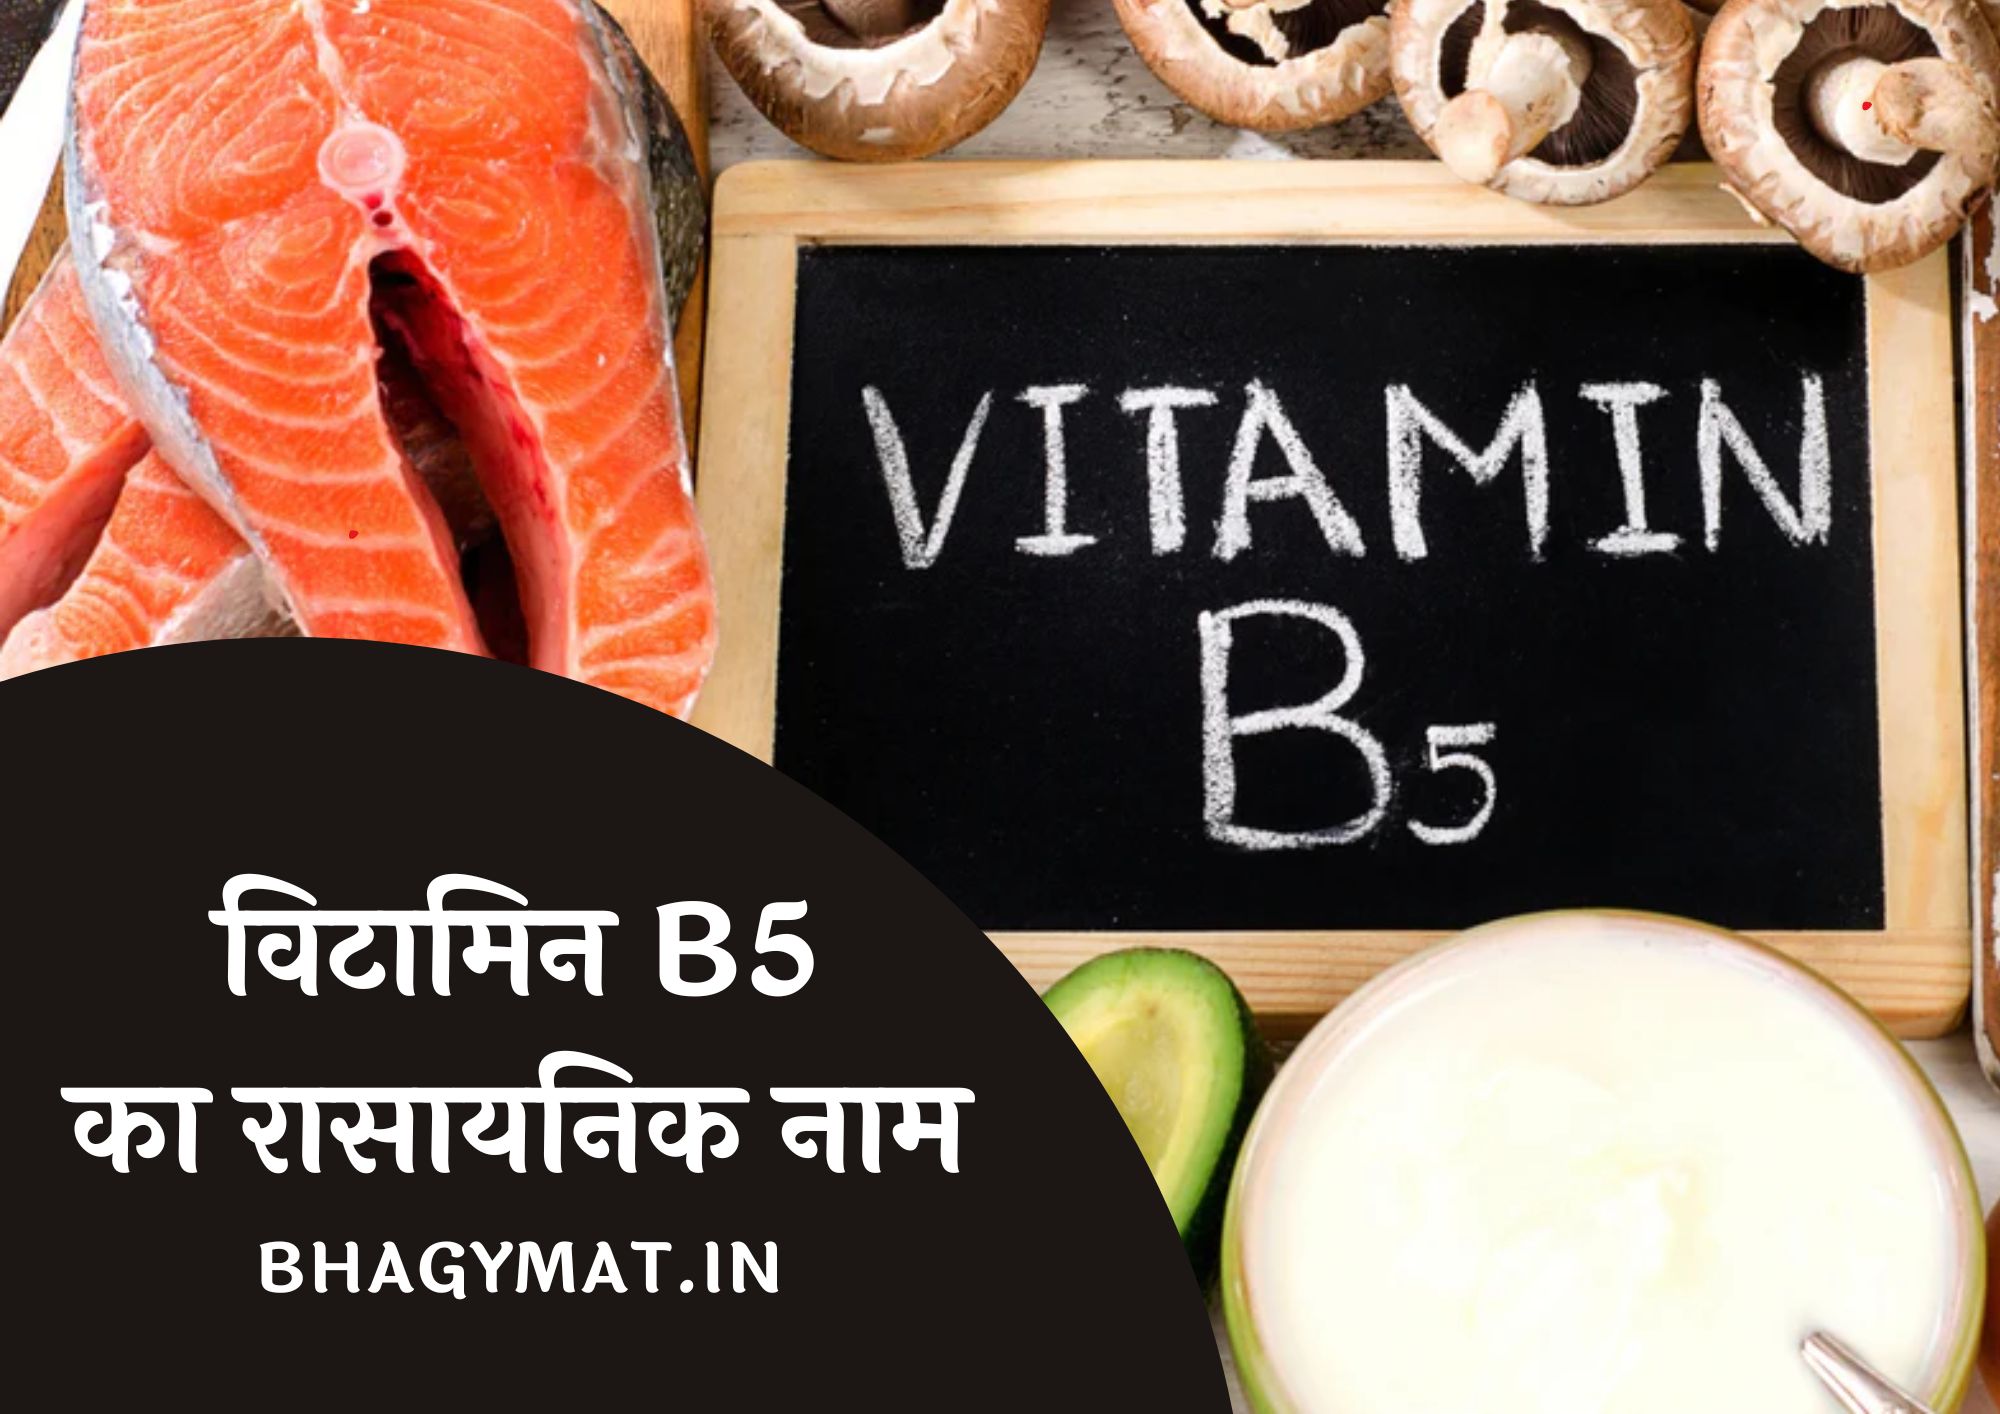 विटामिन B5 का रासायनिक नाम क्या है (Vitamin B5 Chemical Name In Hindi) - Vitamin B5 Ka Rasayanik Naam Kya Hai